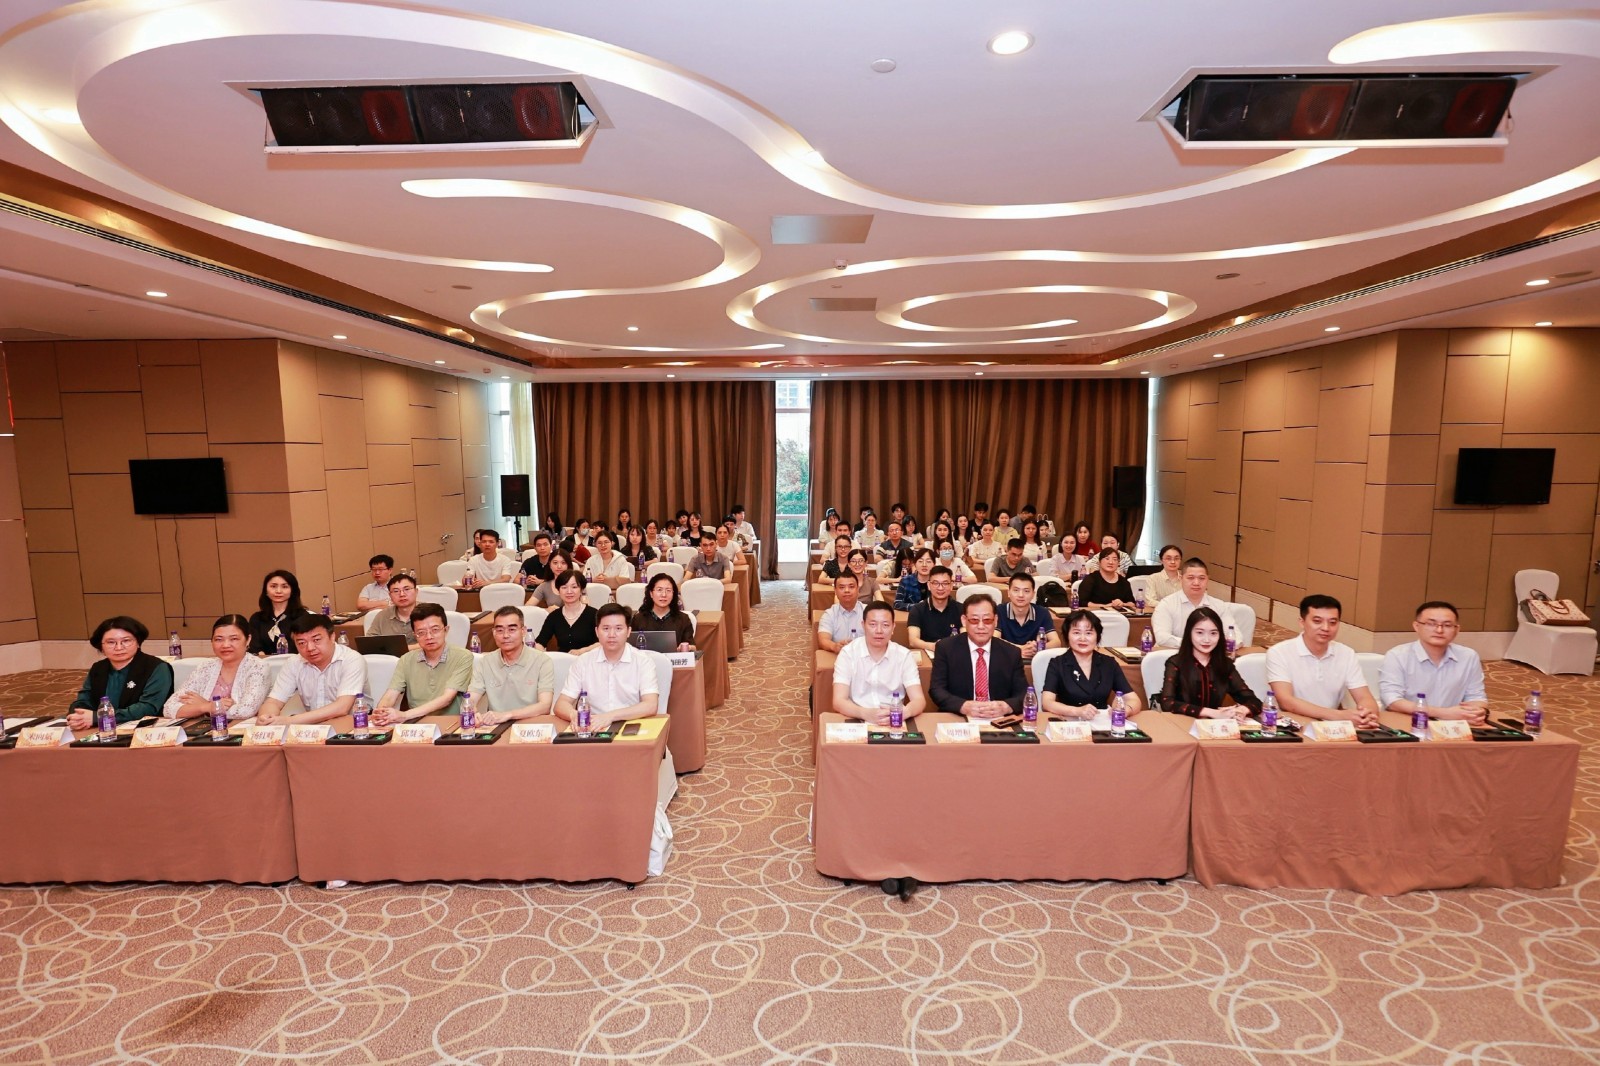 广东省医学教育协会皮肤病学教育专业委员会成立大会暨首届学术年会顺利举行